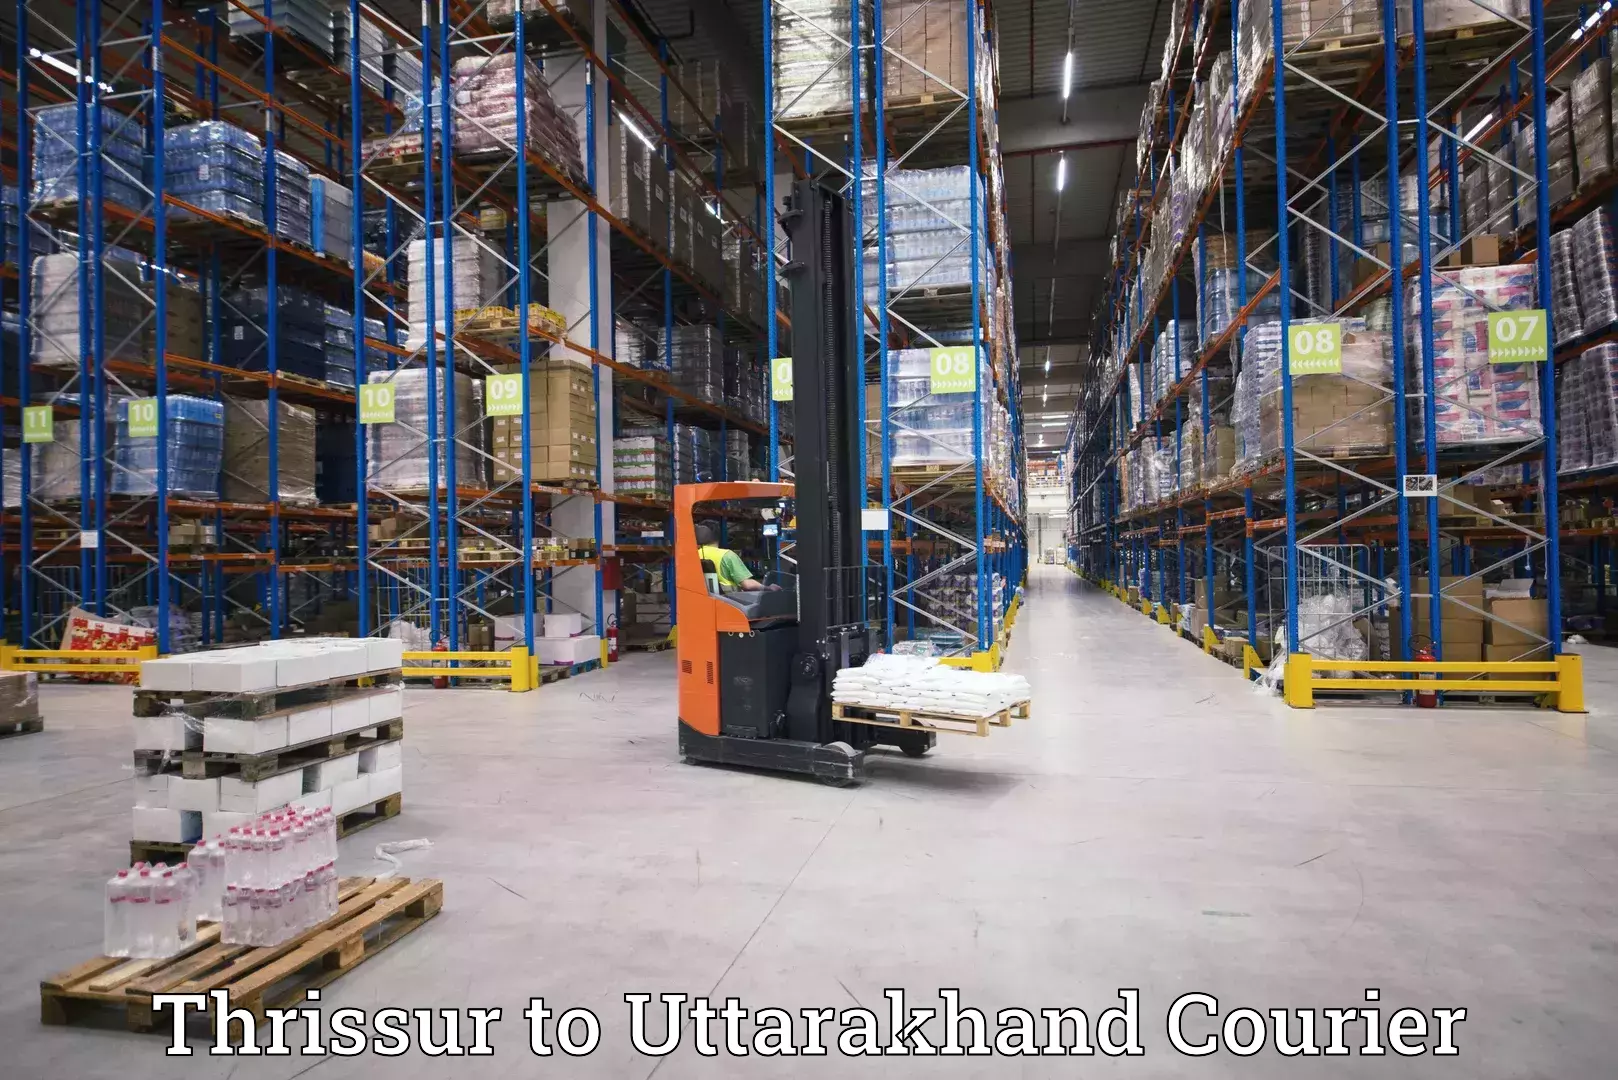 Courier service comparison Thrissur to Uttarakhand